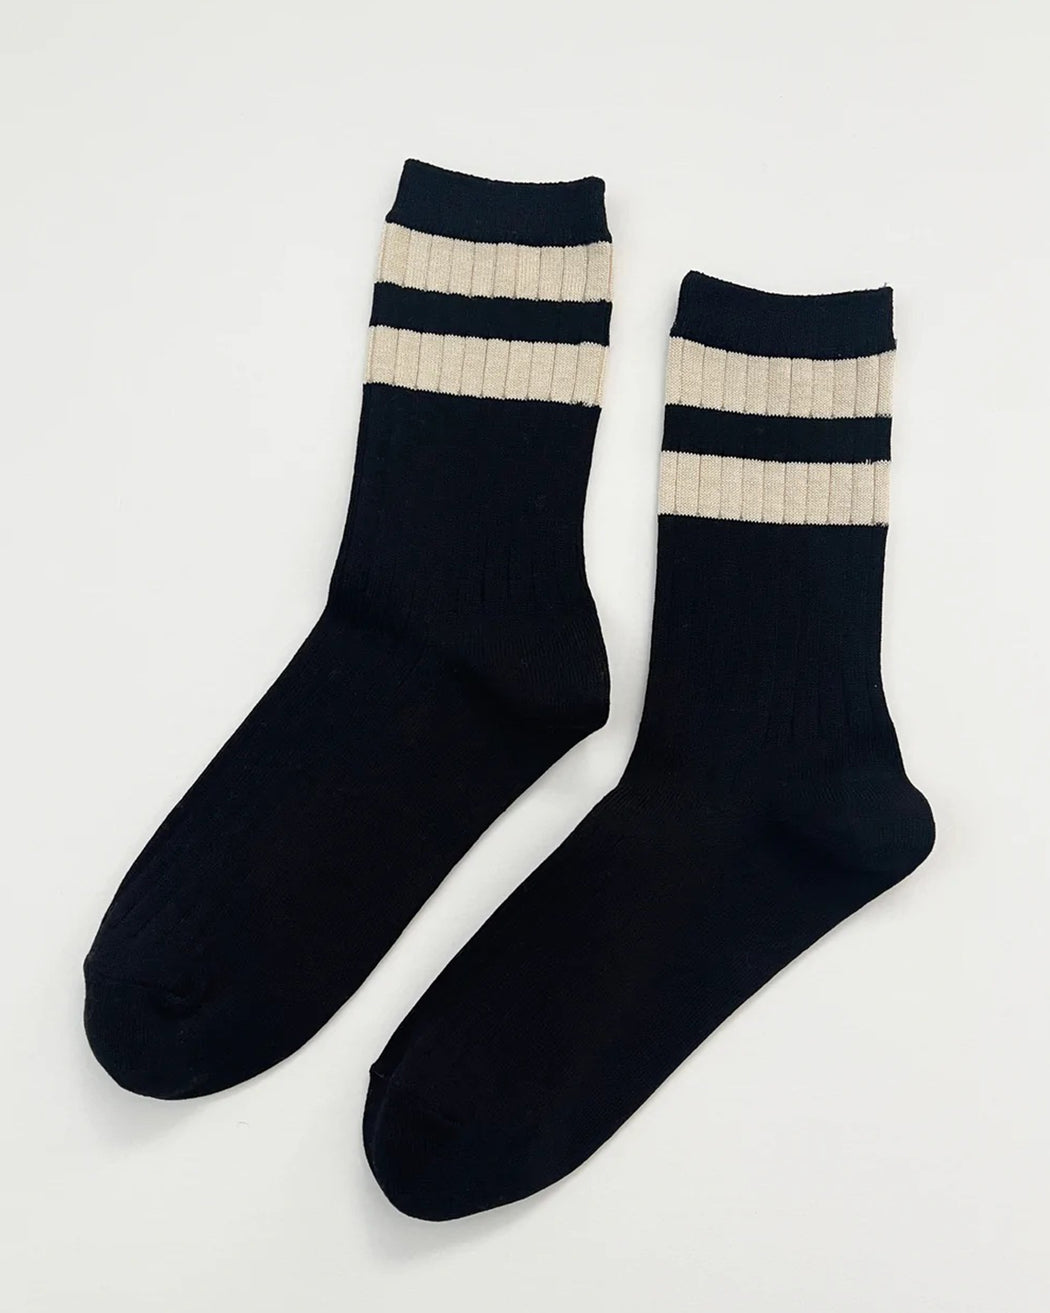 Her Socks – Varsity Black